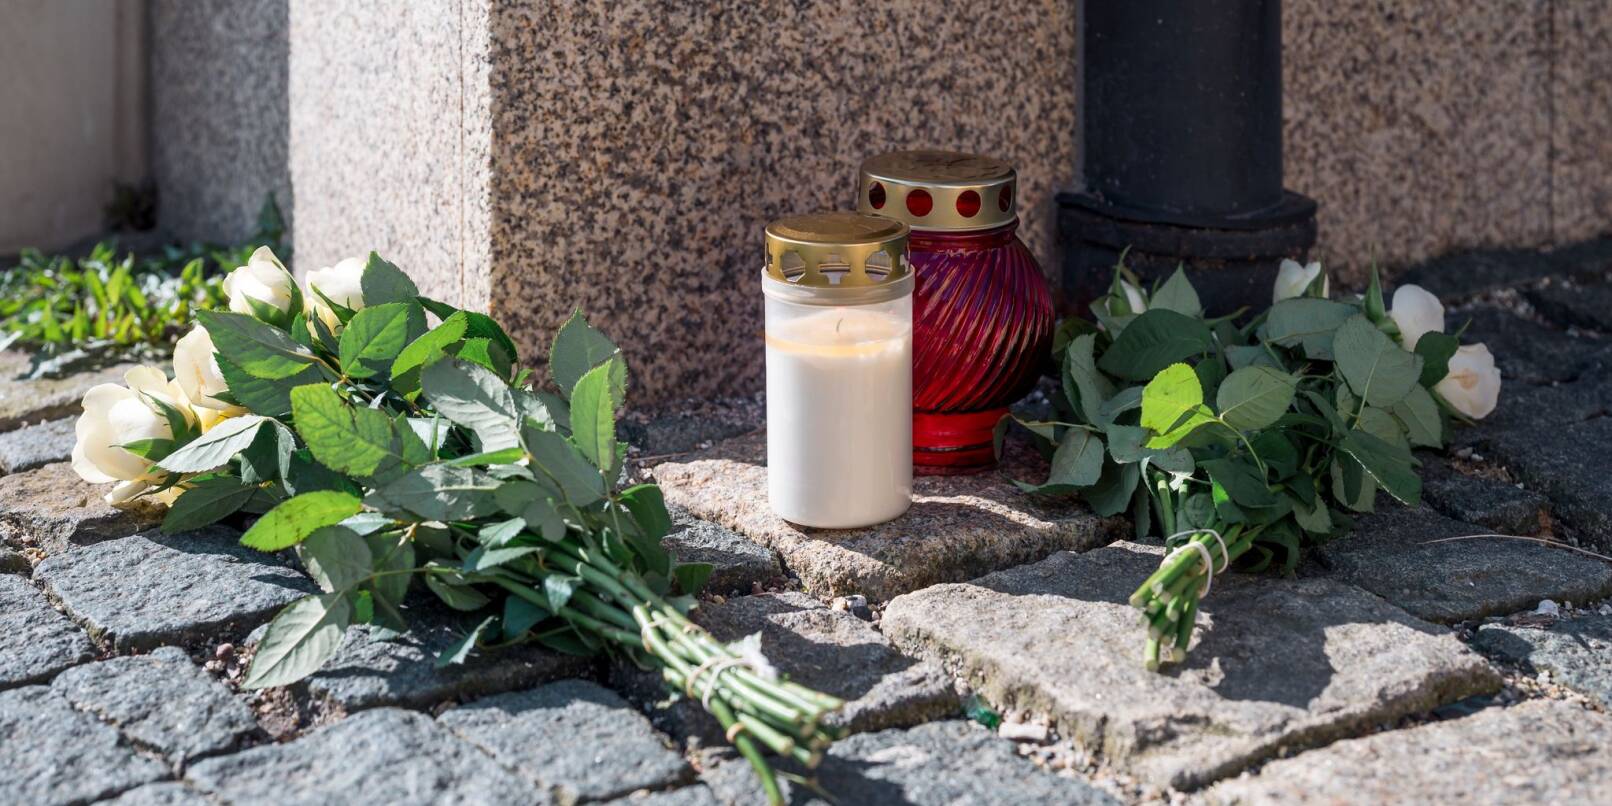 Blumen in der Nähe des Kinder- und Jugendhilfezentrums, in dem eine Zehnjährige tot aufgefunden wurde.